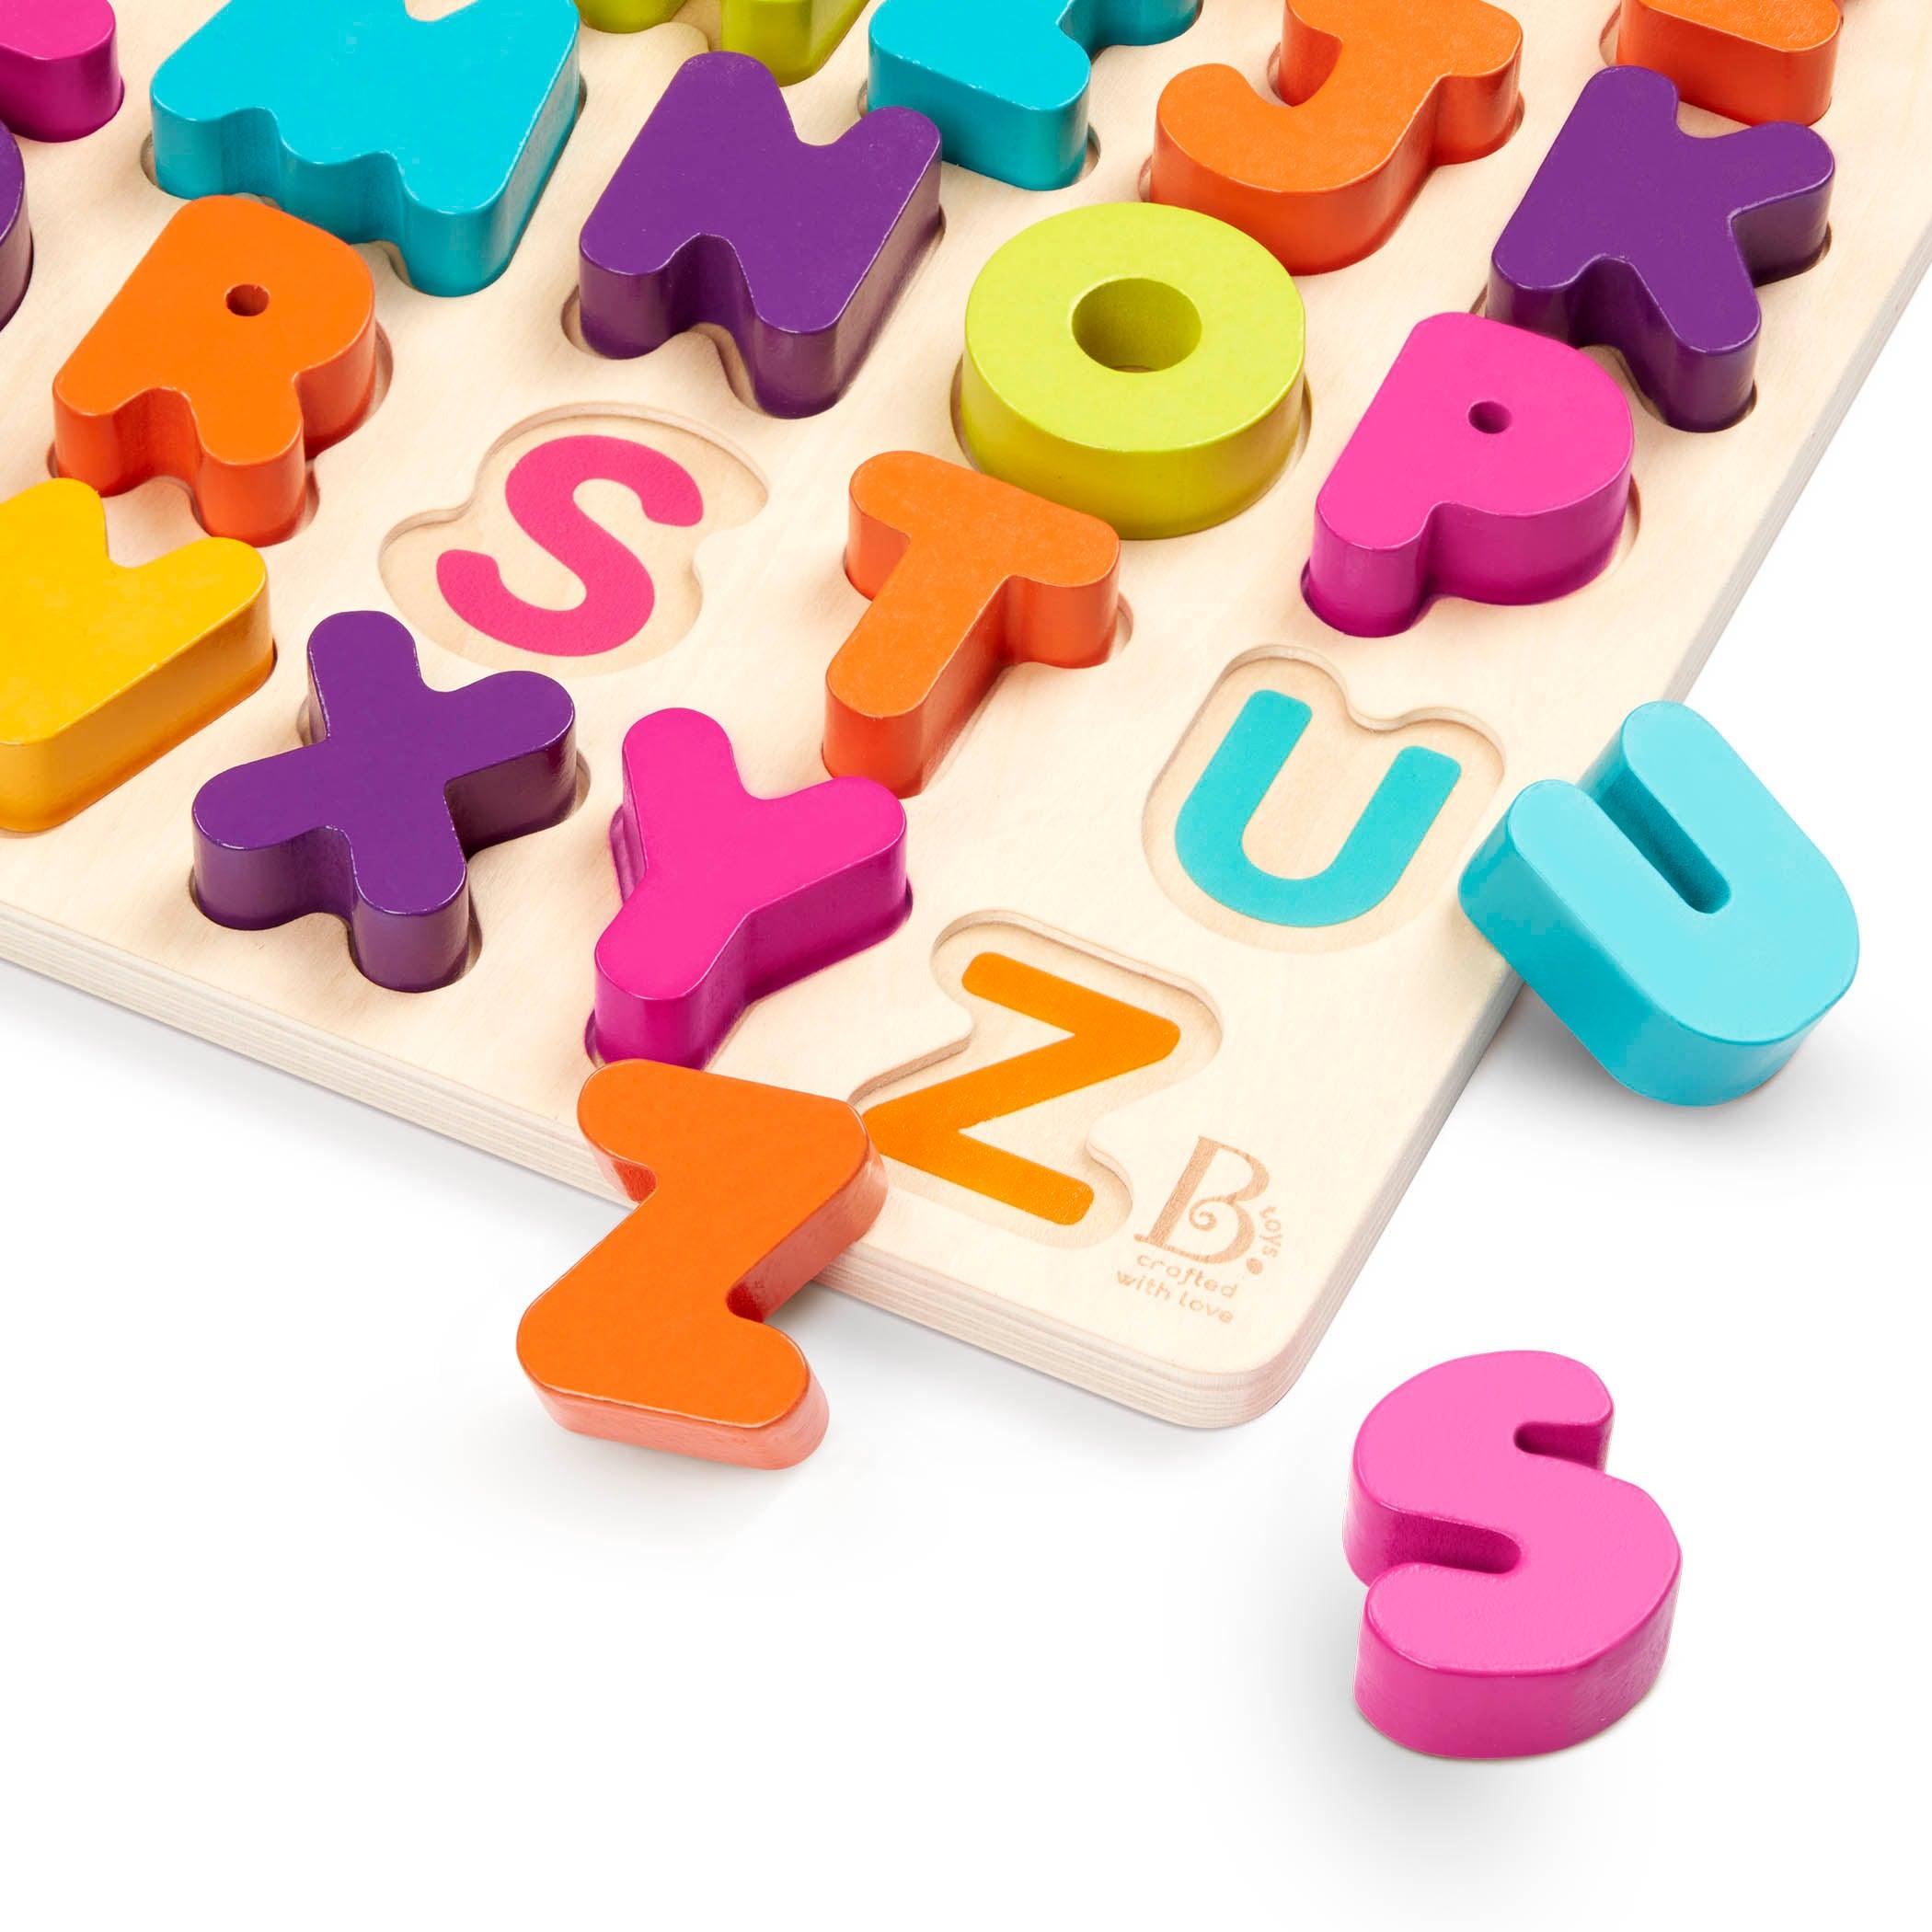 B.Toys: drewniana układanka alfabet duże litery Alpha B.tical - Noski Noski